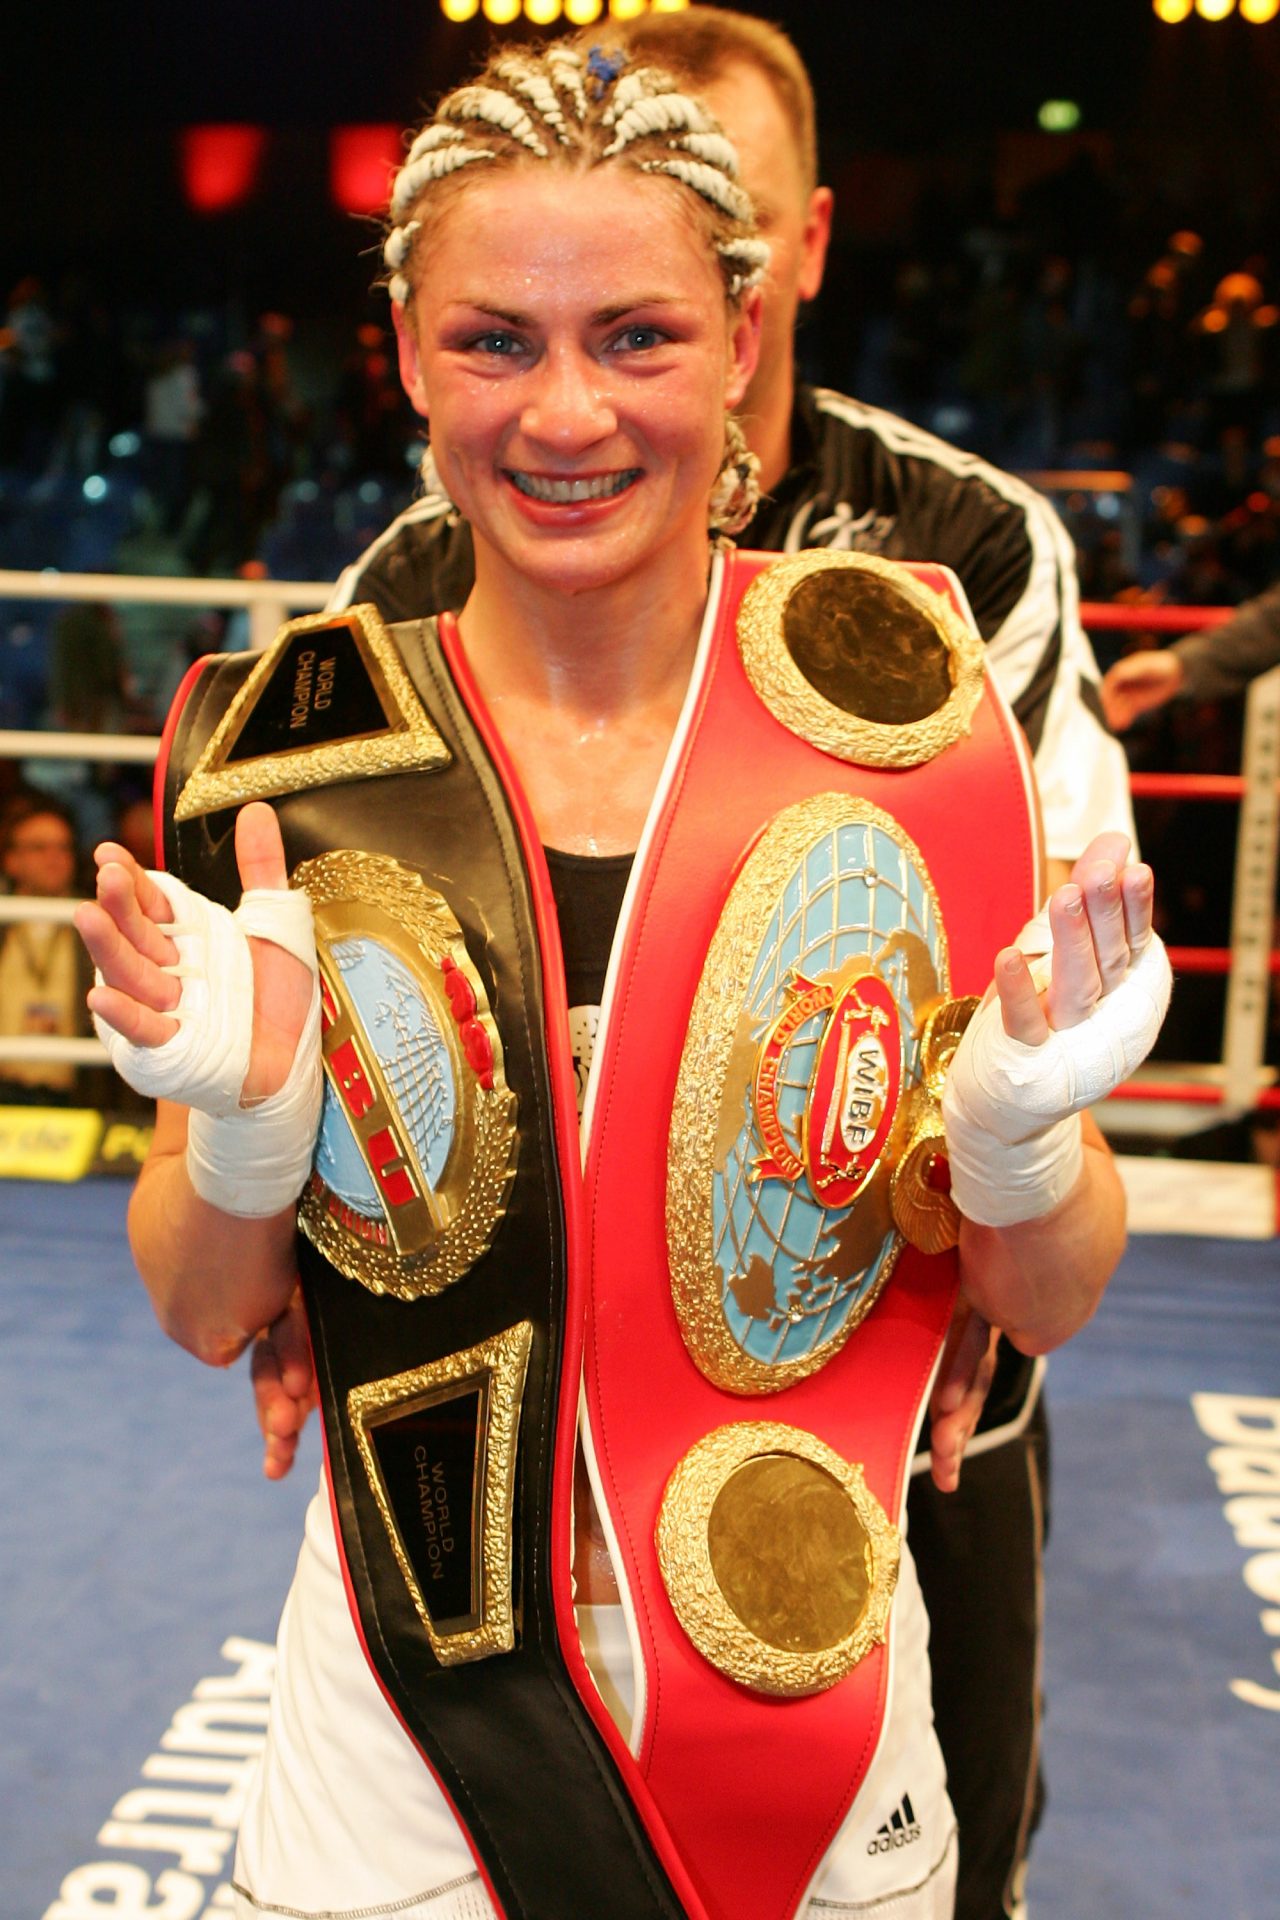 Alesia Klimowitsch